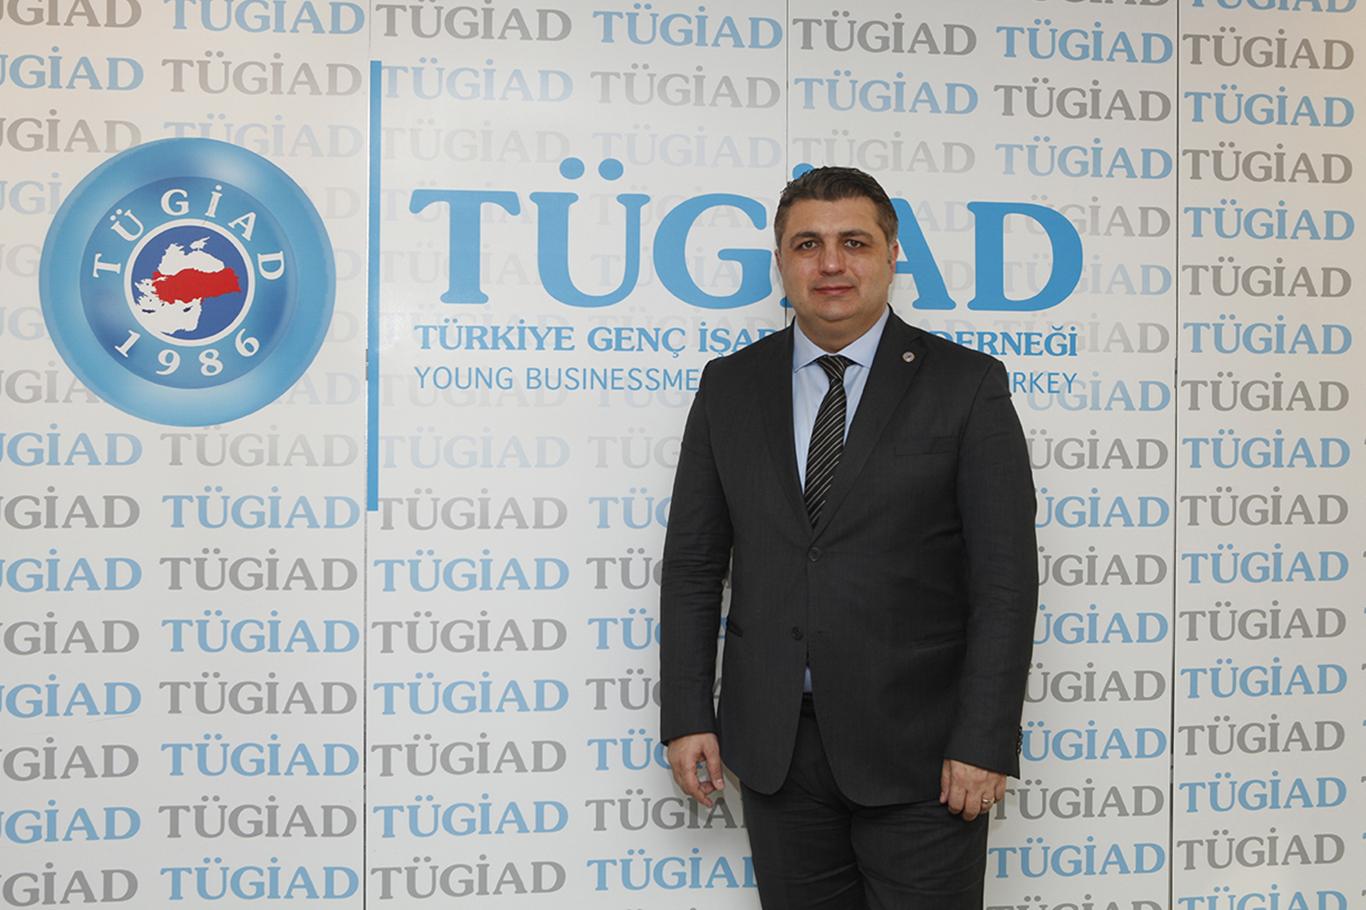 TÜGİAD Başkanı Şohoğlu: "Tasarruf etmeyi öğrenmemiz şart"